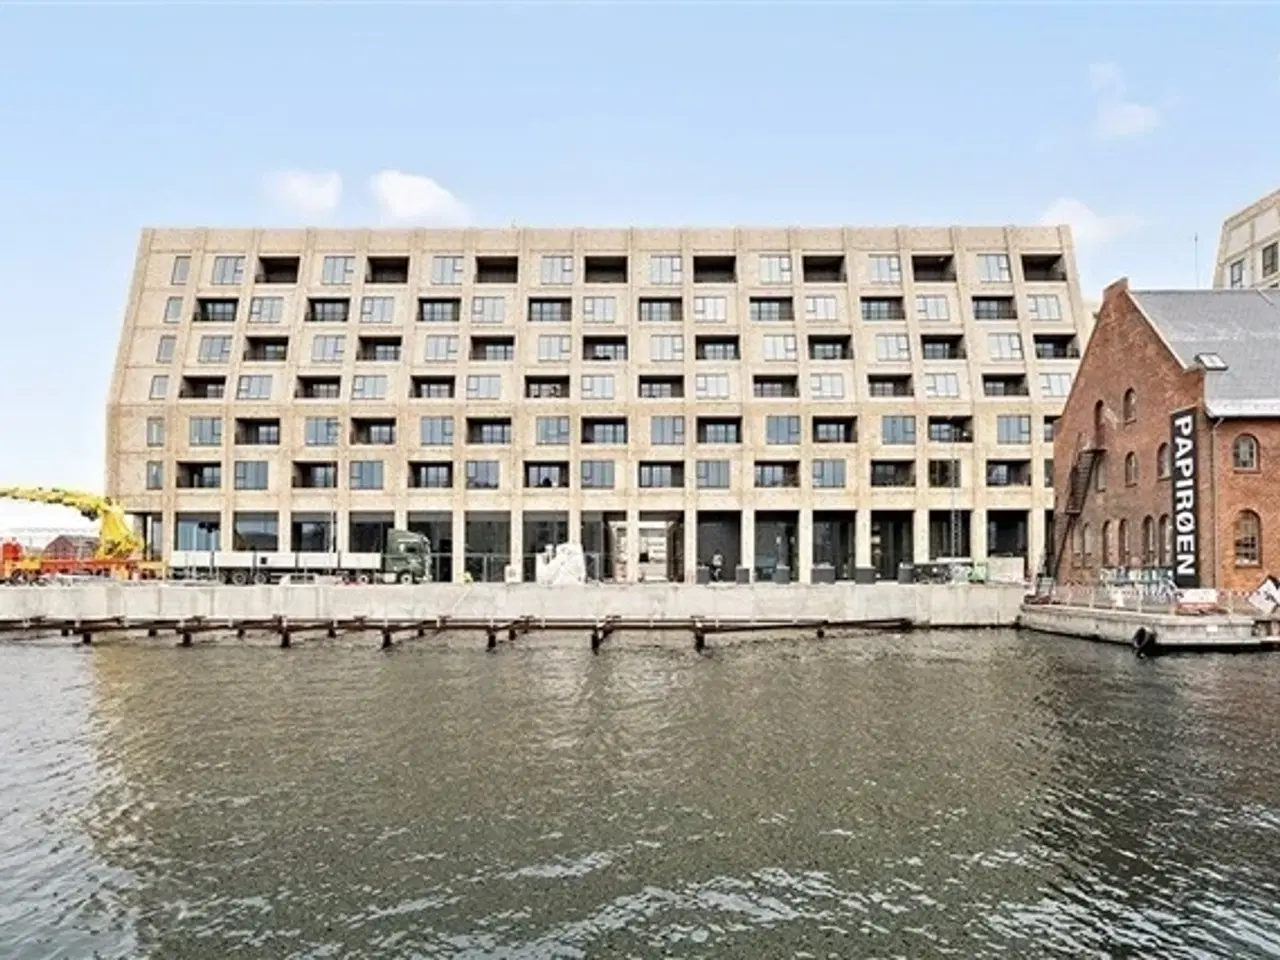 Billede 1 - Eksklusiv lejlighed på Papirøen med 15 m2 altan ud mod kanalen - uden